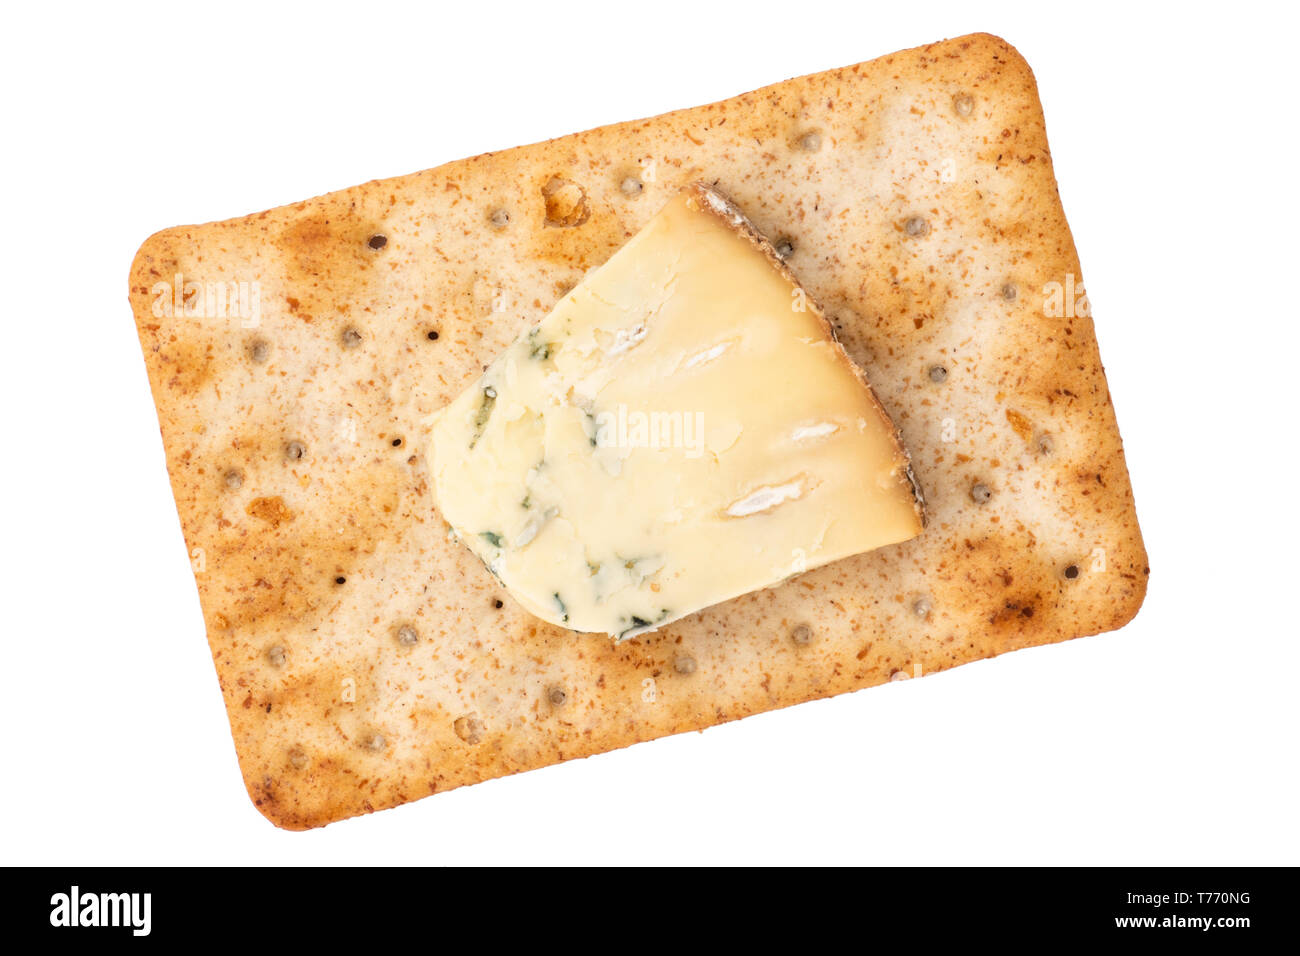 Käse, Cracker mit Blue Stilton Käse. Sauerteig Kekse für einen schnellen Snack, UK. Ausschneiden oder auf einem weißen Hintergrund. Stockfoto